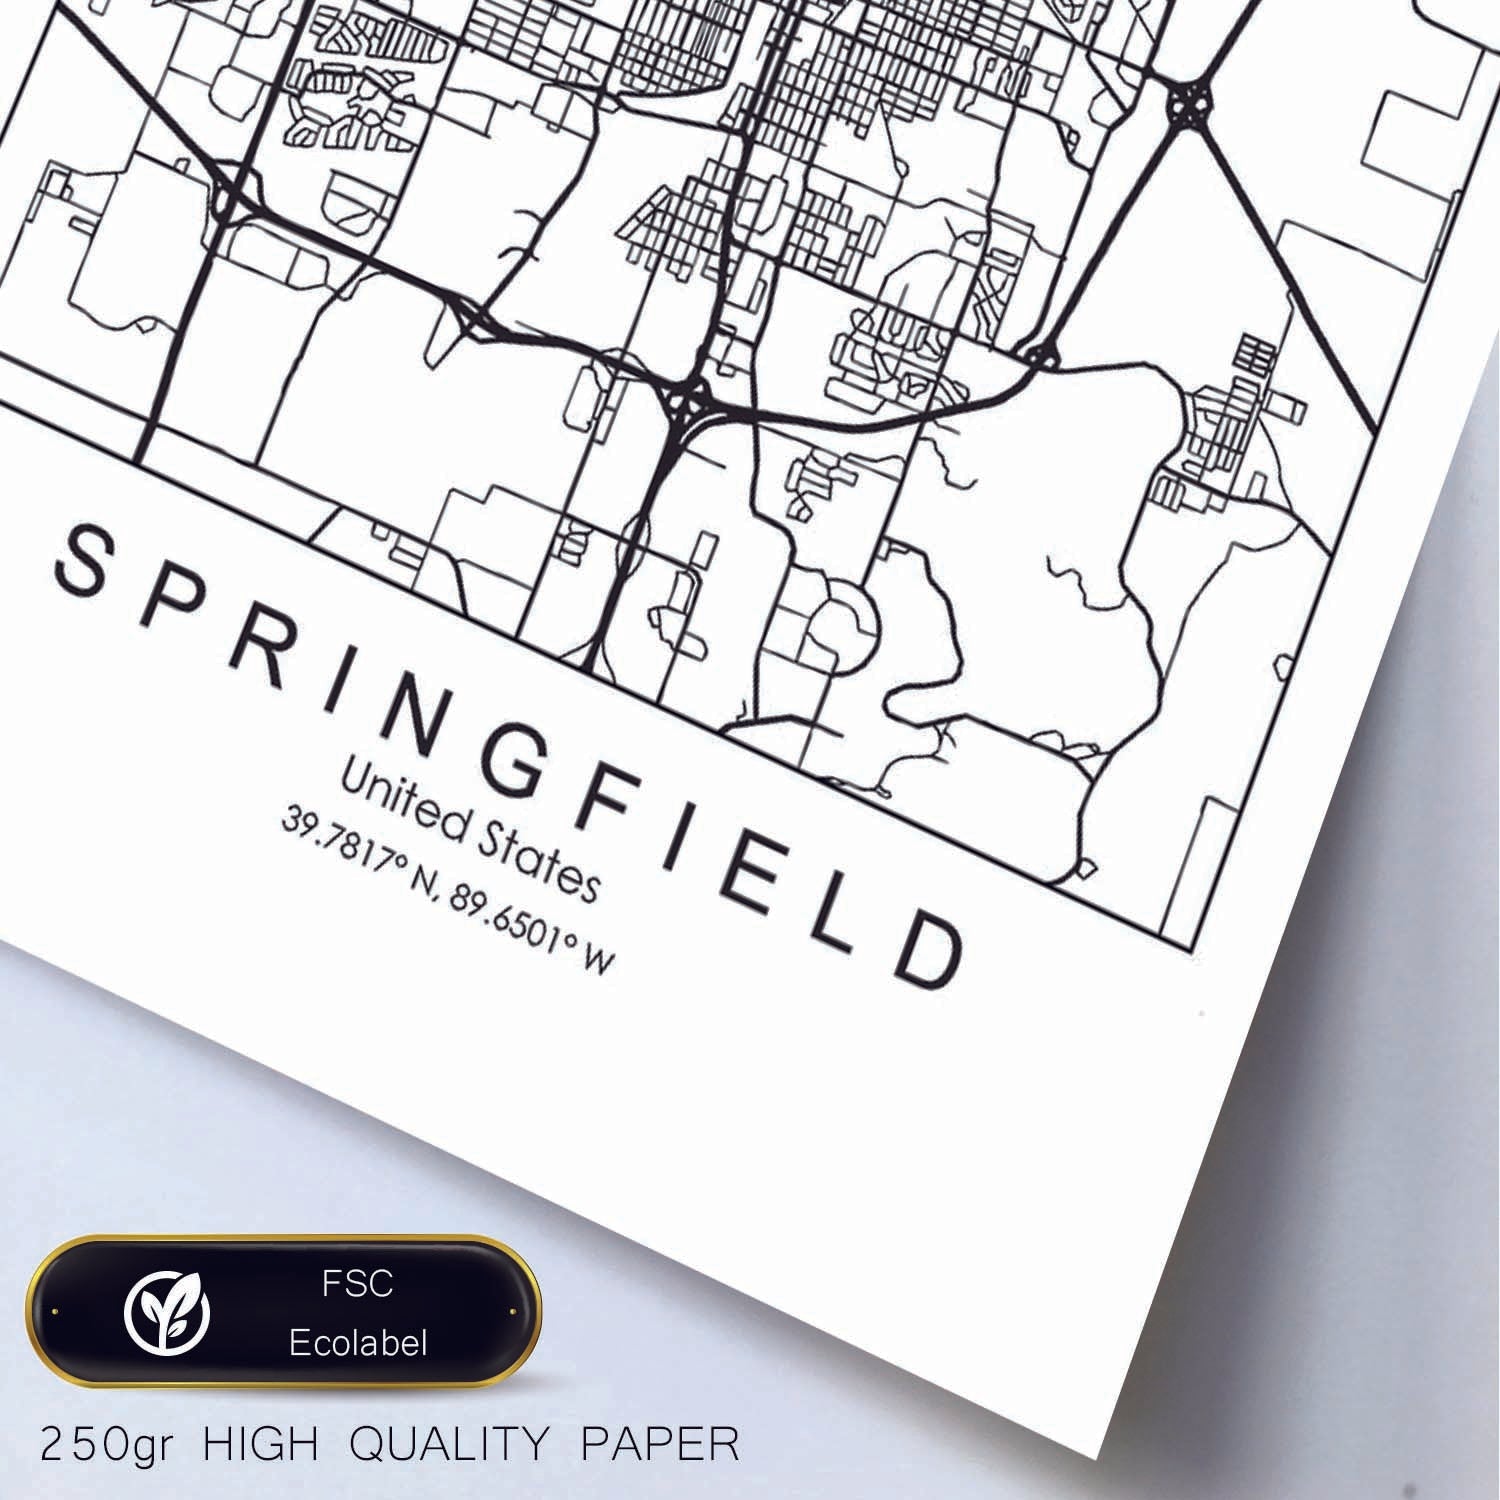 Poster con mapa de Springfield. Lámina de Estados Unidos, con imágenes de mapas y carreteras-Artwork-Nacnic-Nacnic Estudio SL